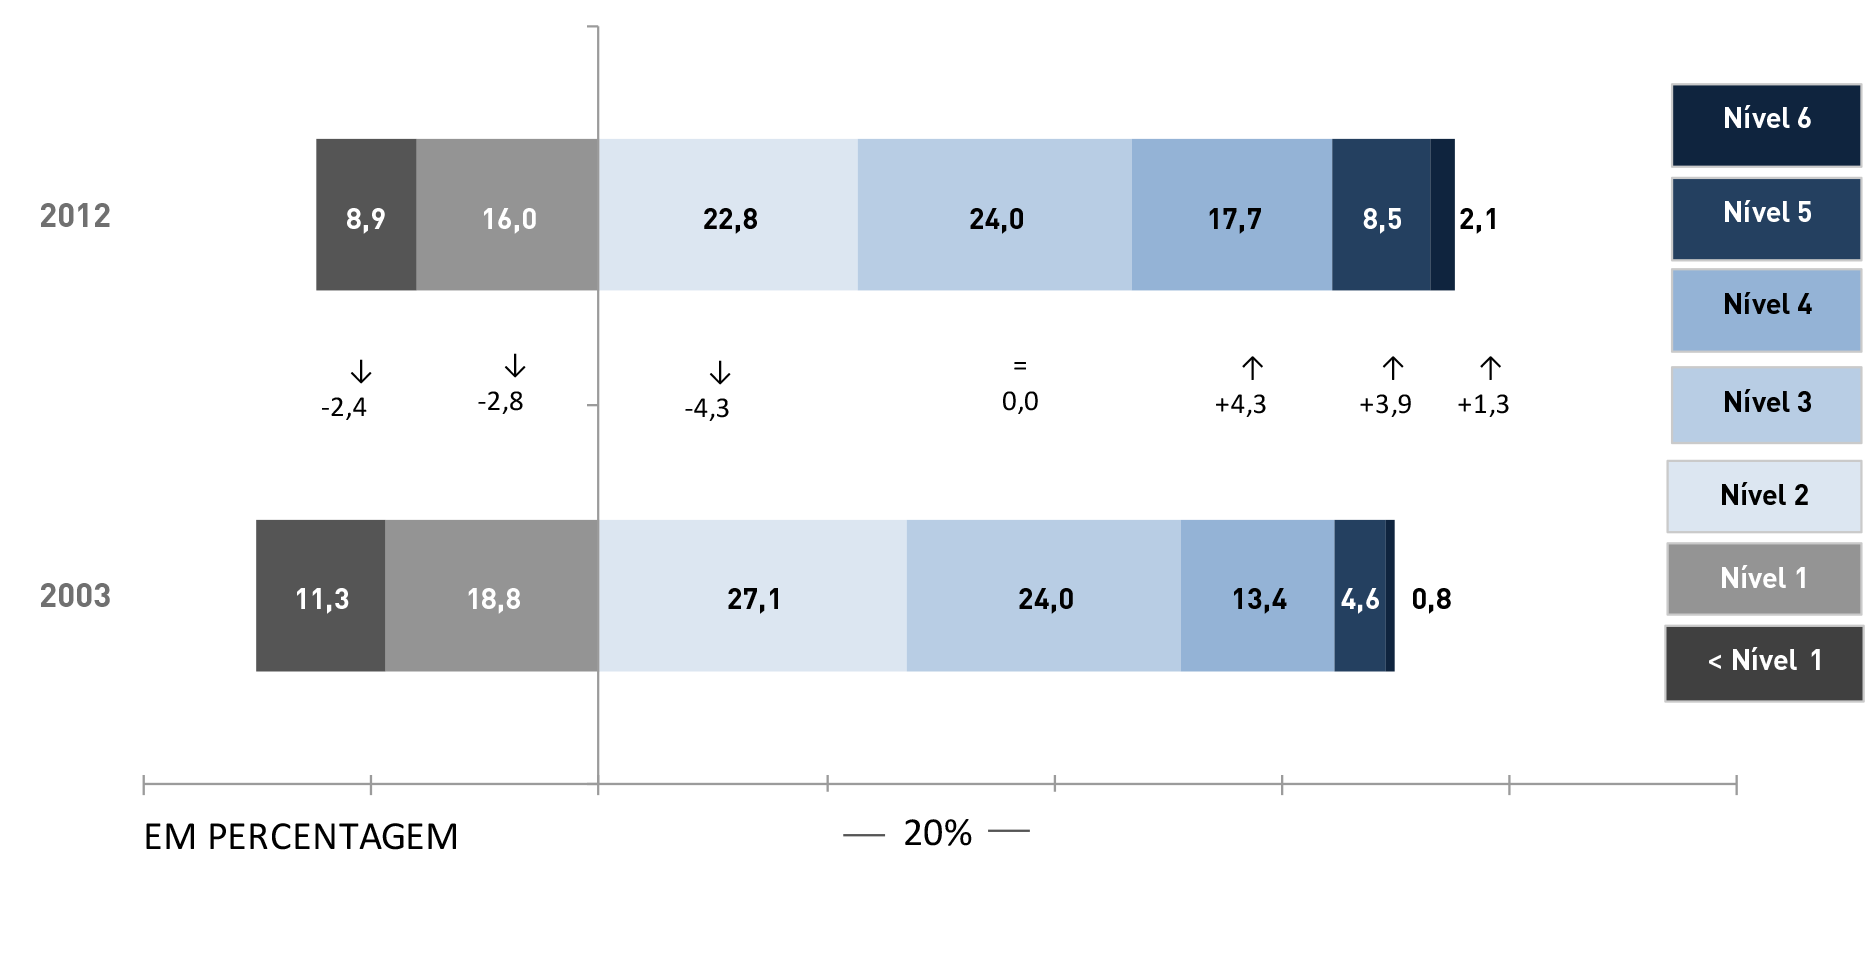 17 4.1 MATEMÁTICA A comparação da distribuição percentual dos resultados dos alunos portugueses por nível de proficiência entre os ciclos de 2003 e 2012 revela um aumento da percentagem de alunos que